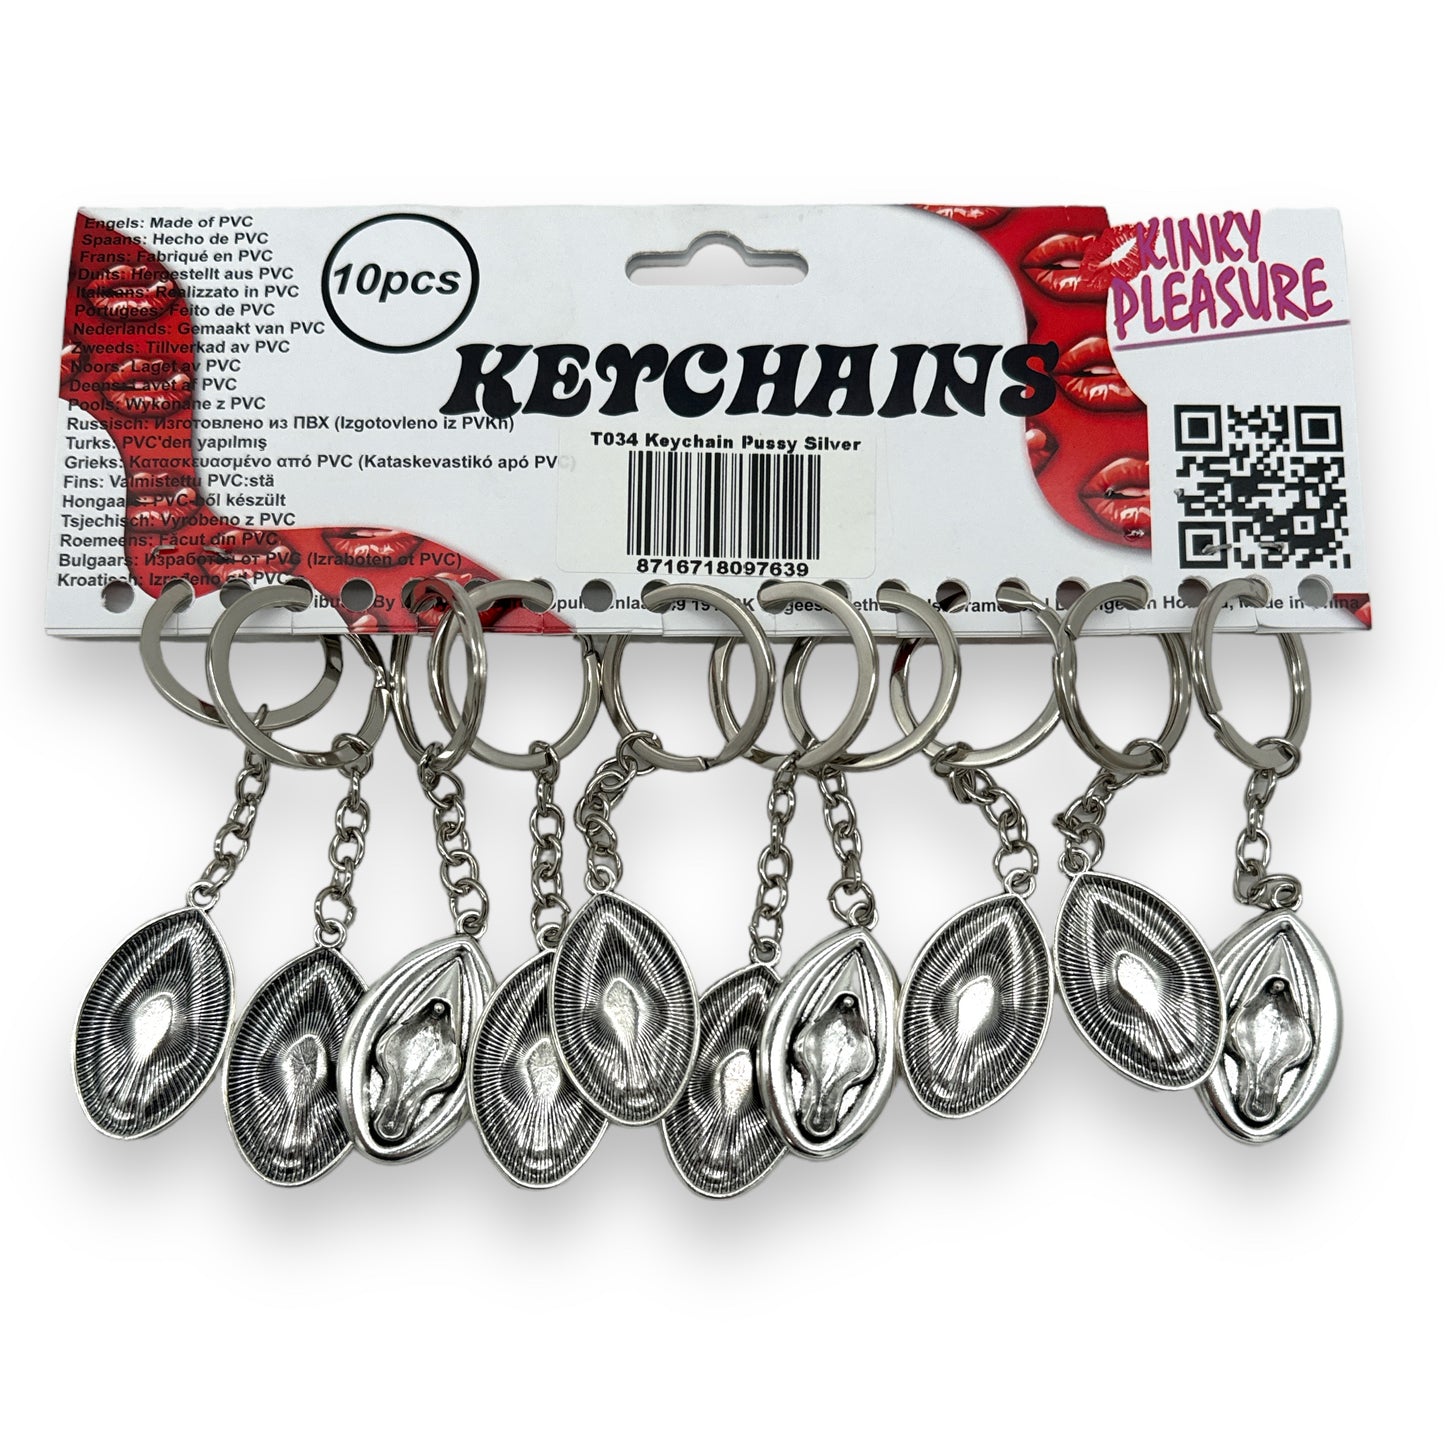 Kinky Pleasure - T034 - Keychain Muschi - Metallic